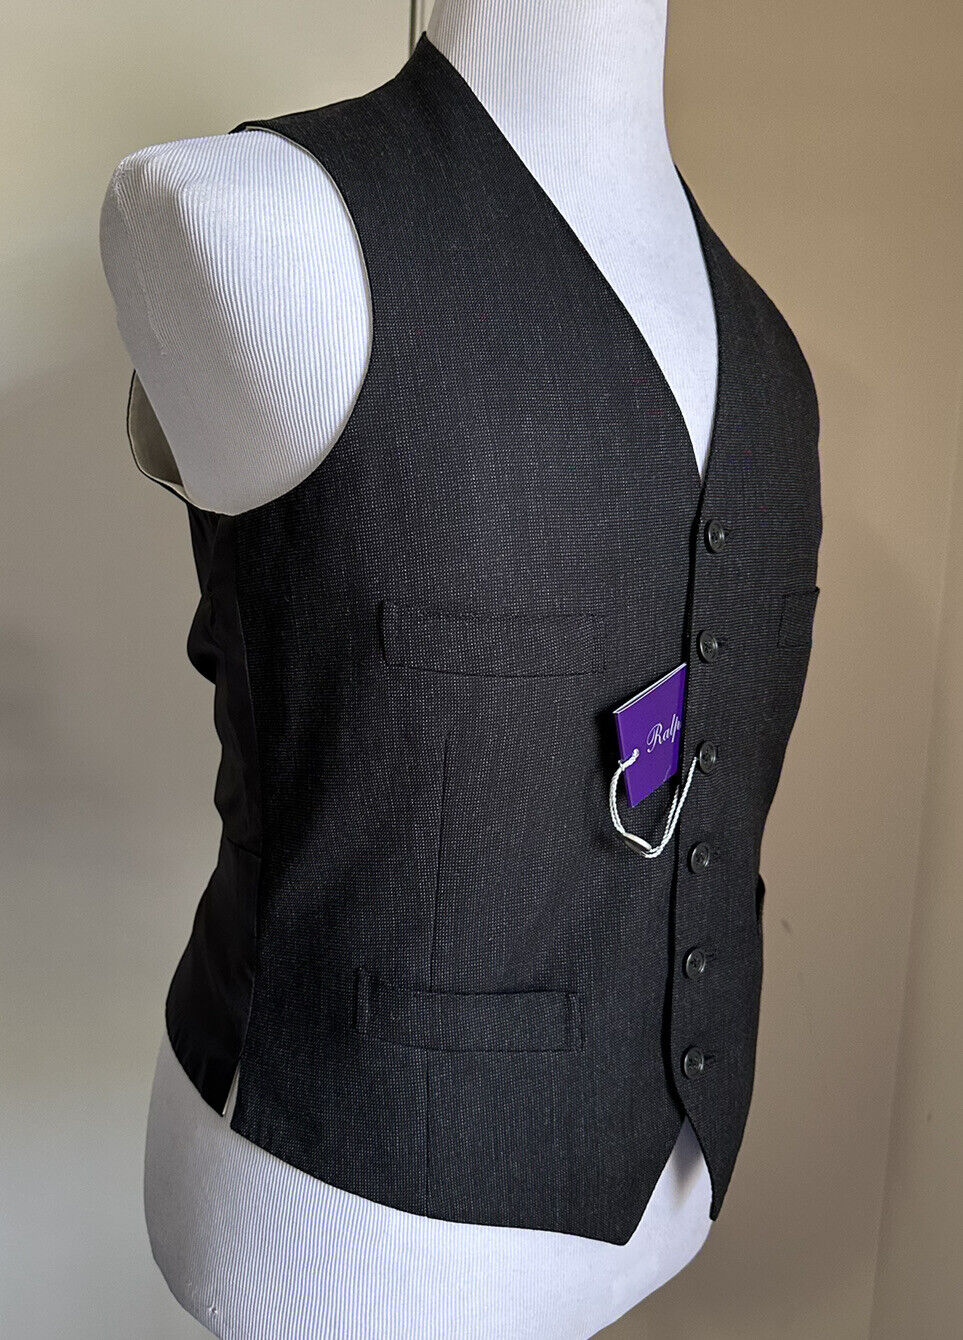 Новый мужской жилет Ralph Lauren Purple Label стоимостью 995 долларов США, серый цвет DK, 38R, США/48R, ЕС, Италия